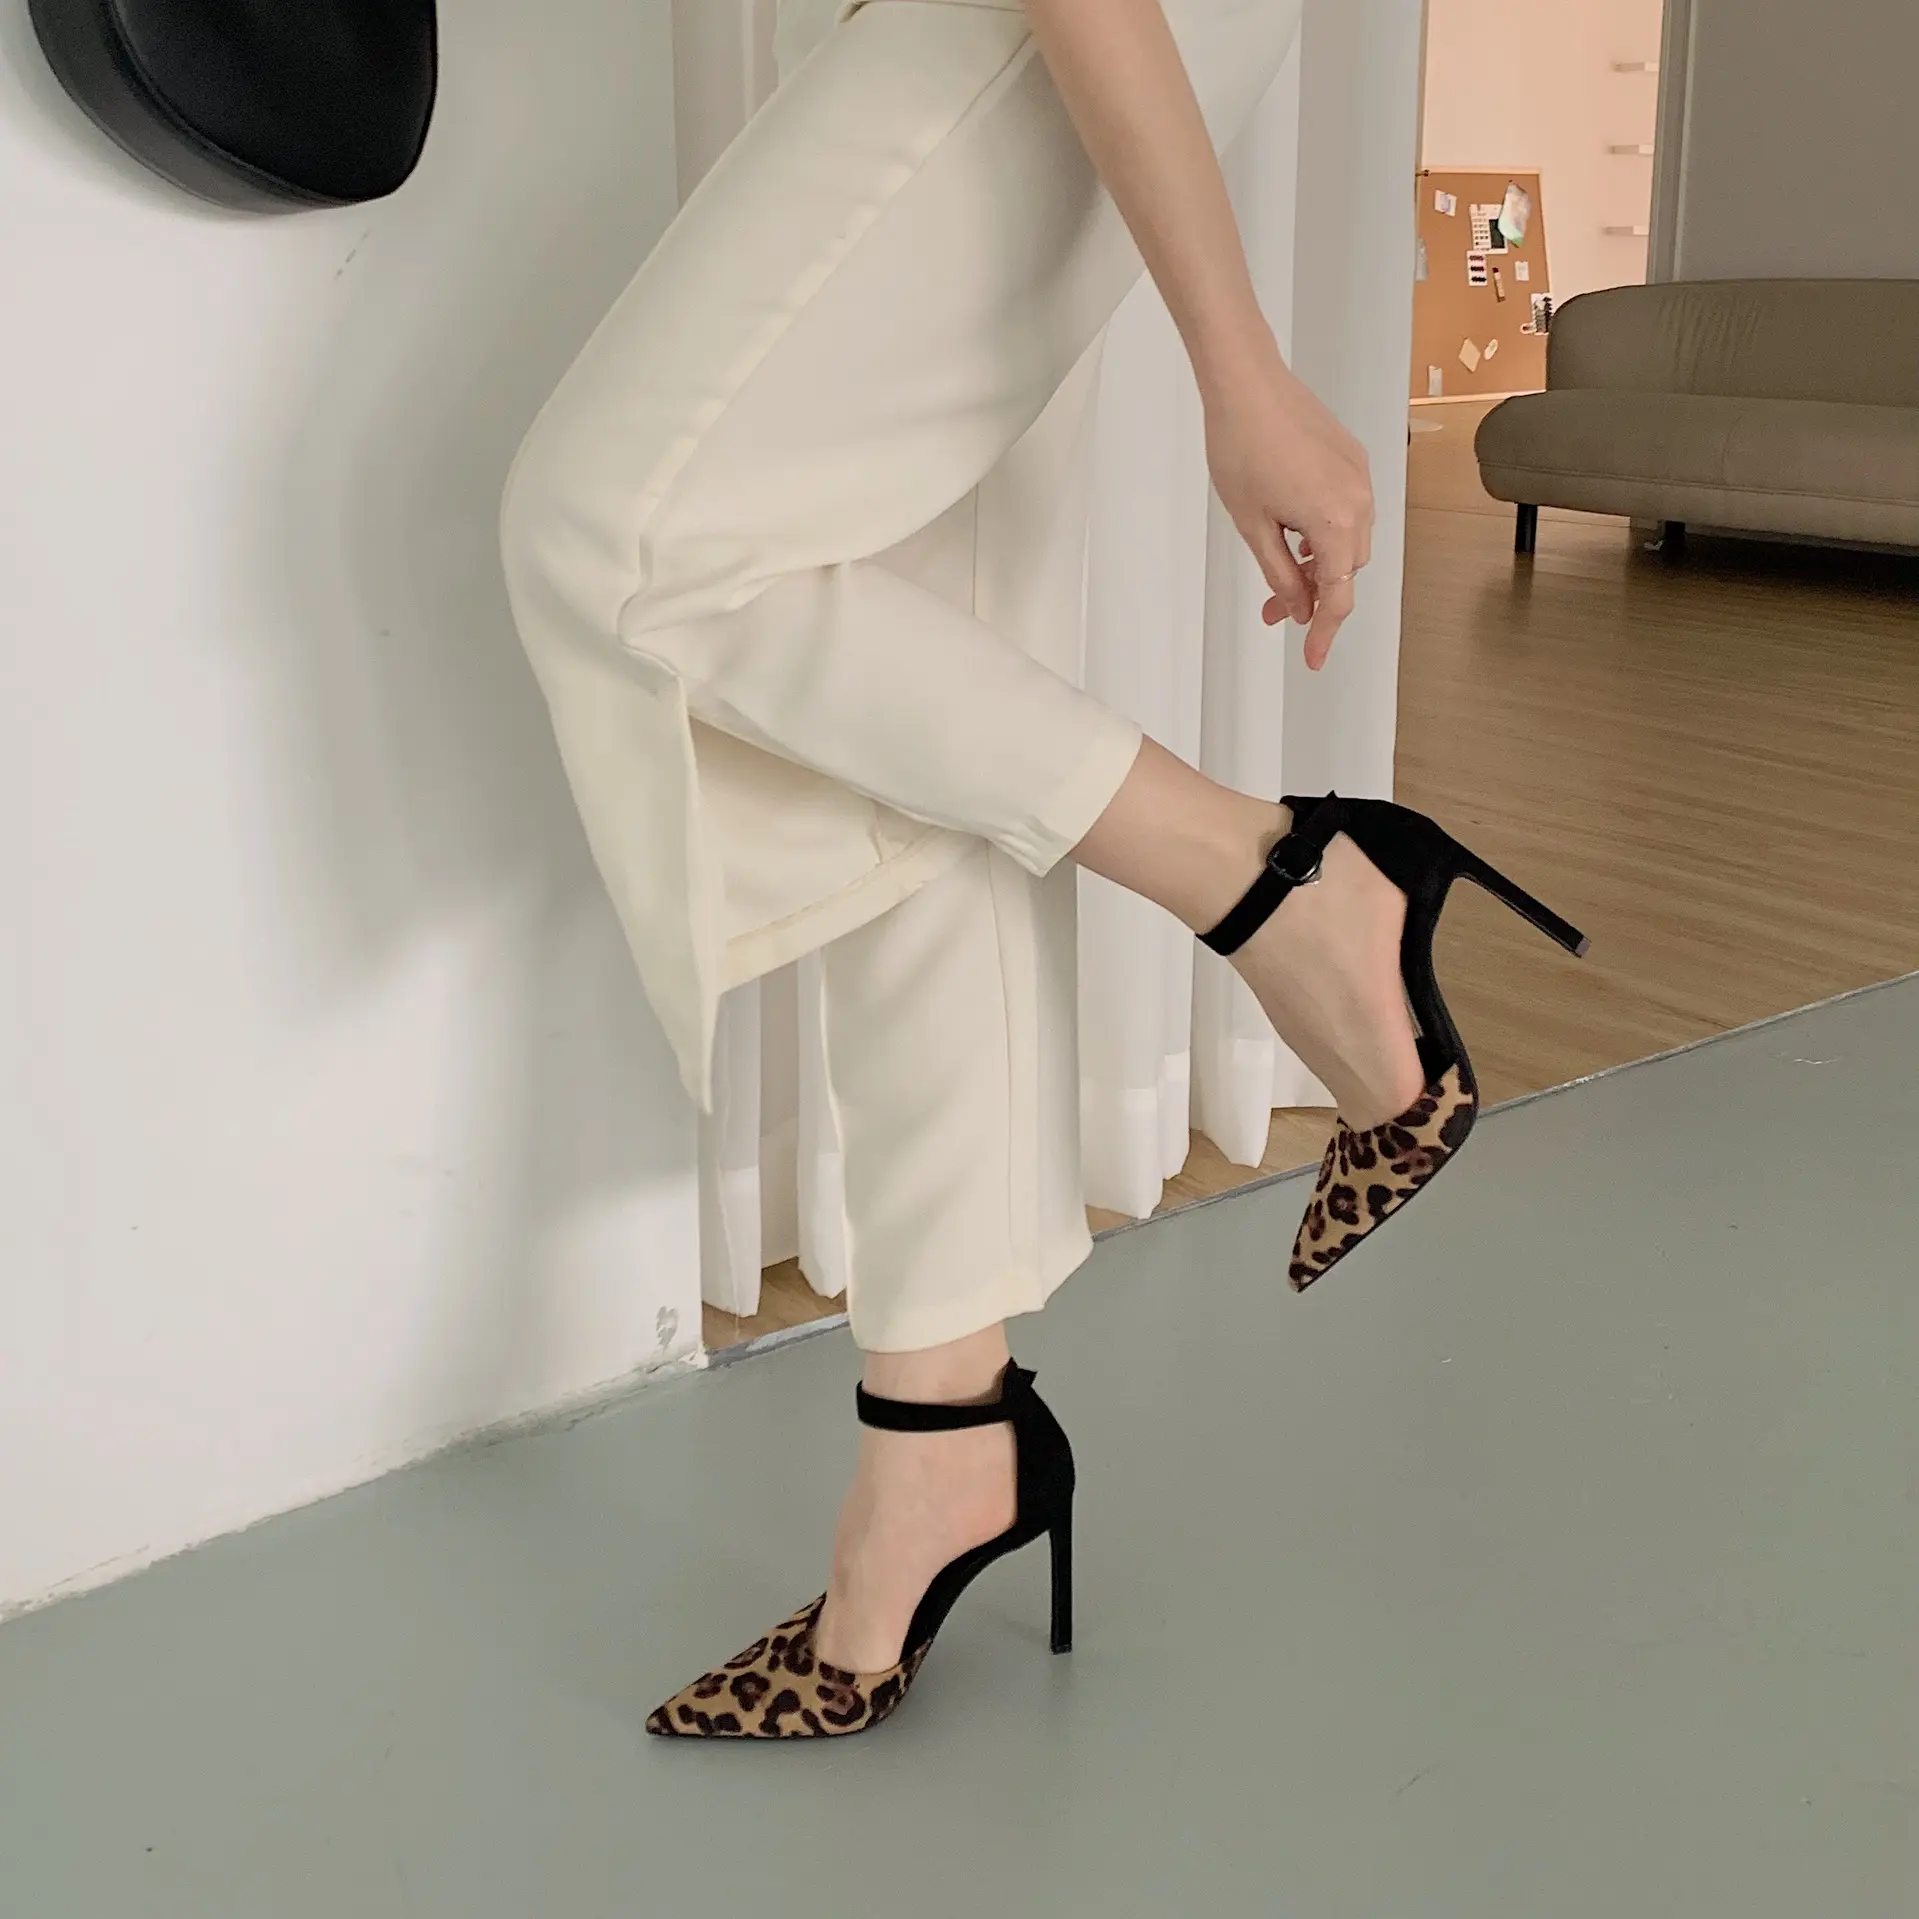 नई 2022 वसंत और शरद ऋतु डिजाइन भावना पतली एड़ी सेक्सी फ्रेंच उथले मुंह जूते तेंदुए प्रिंट बताया पैर की अंगुली उच्च-एड़ी महिलाओं